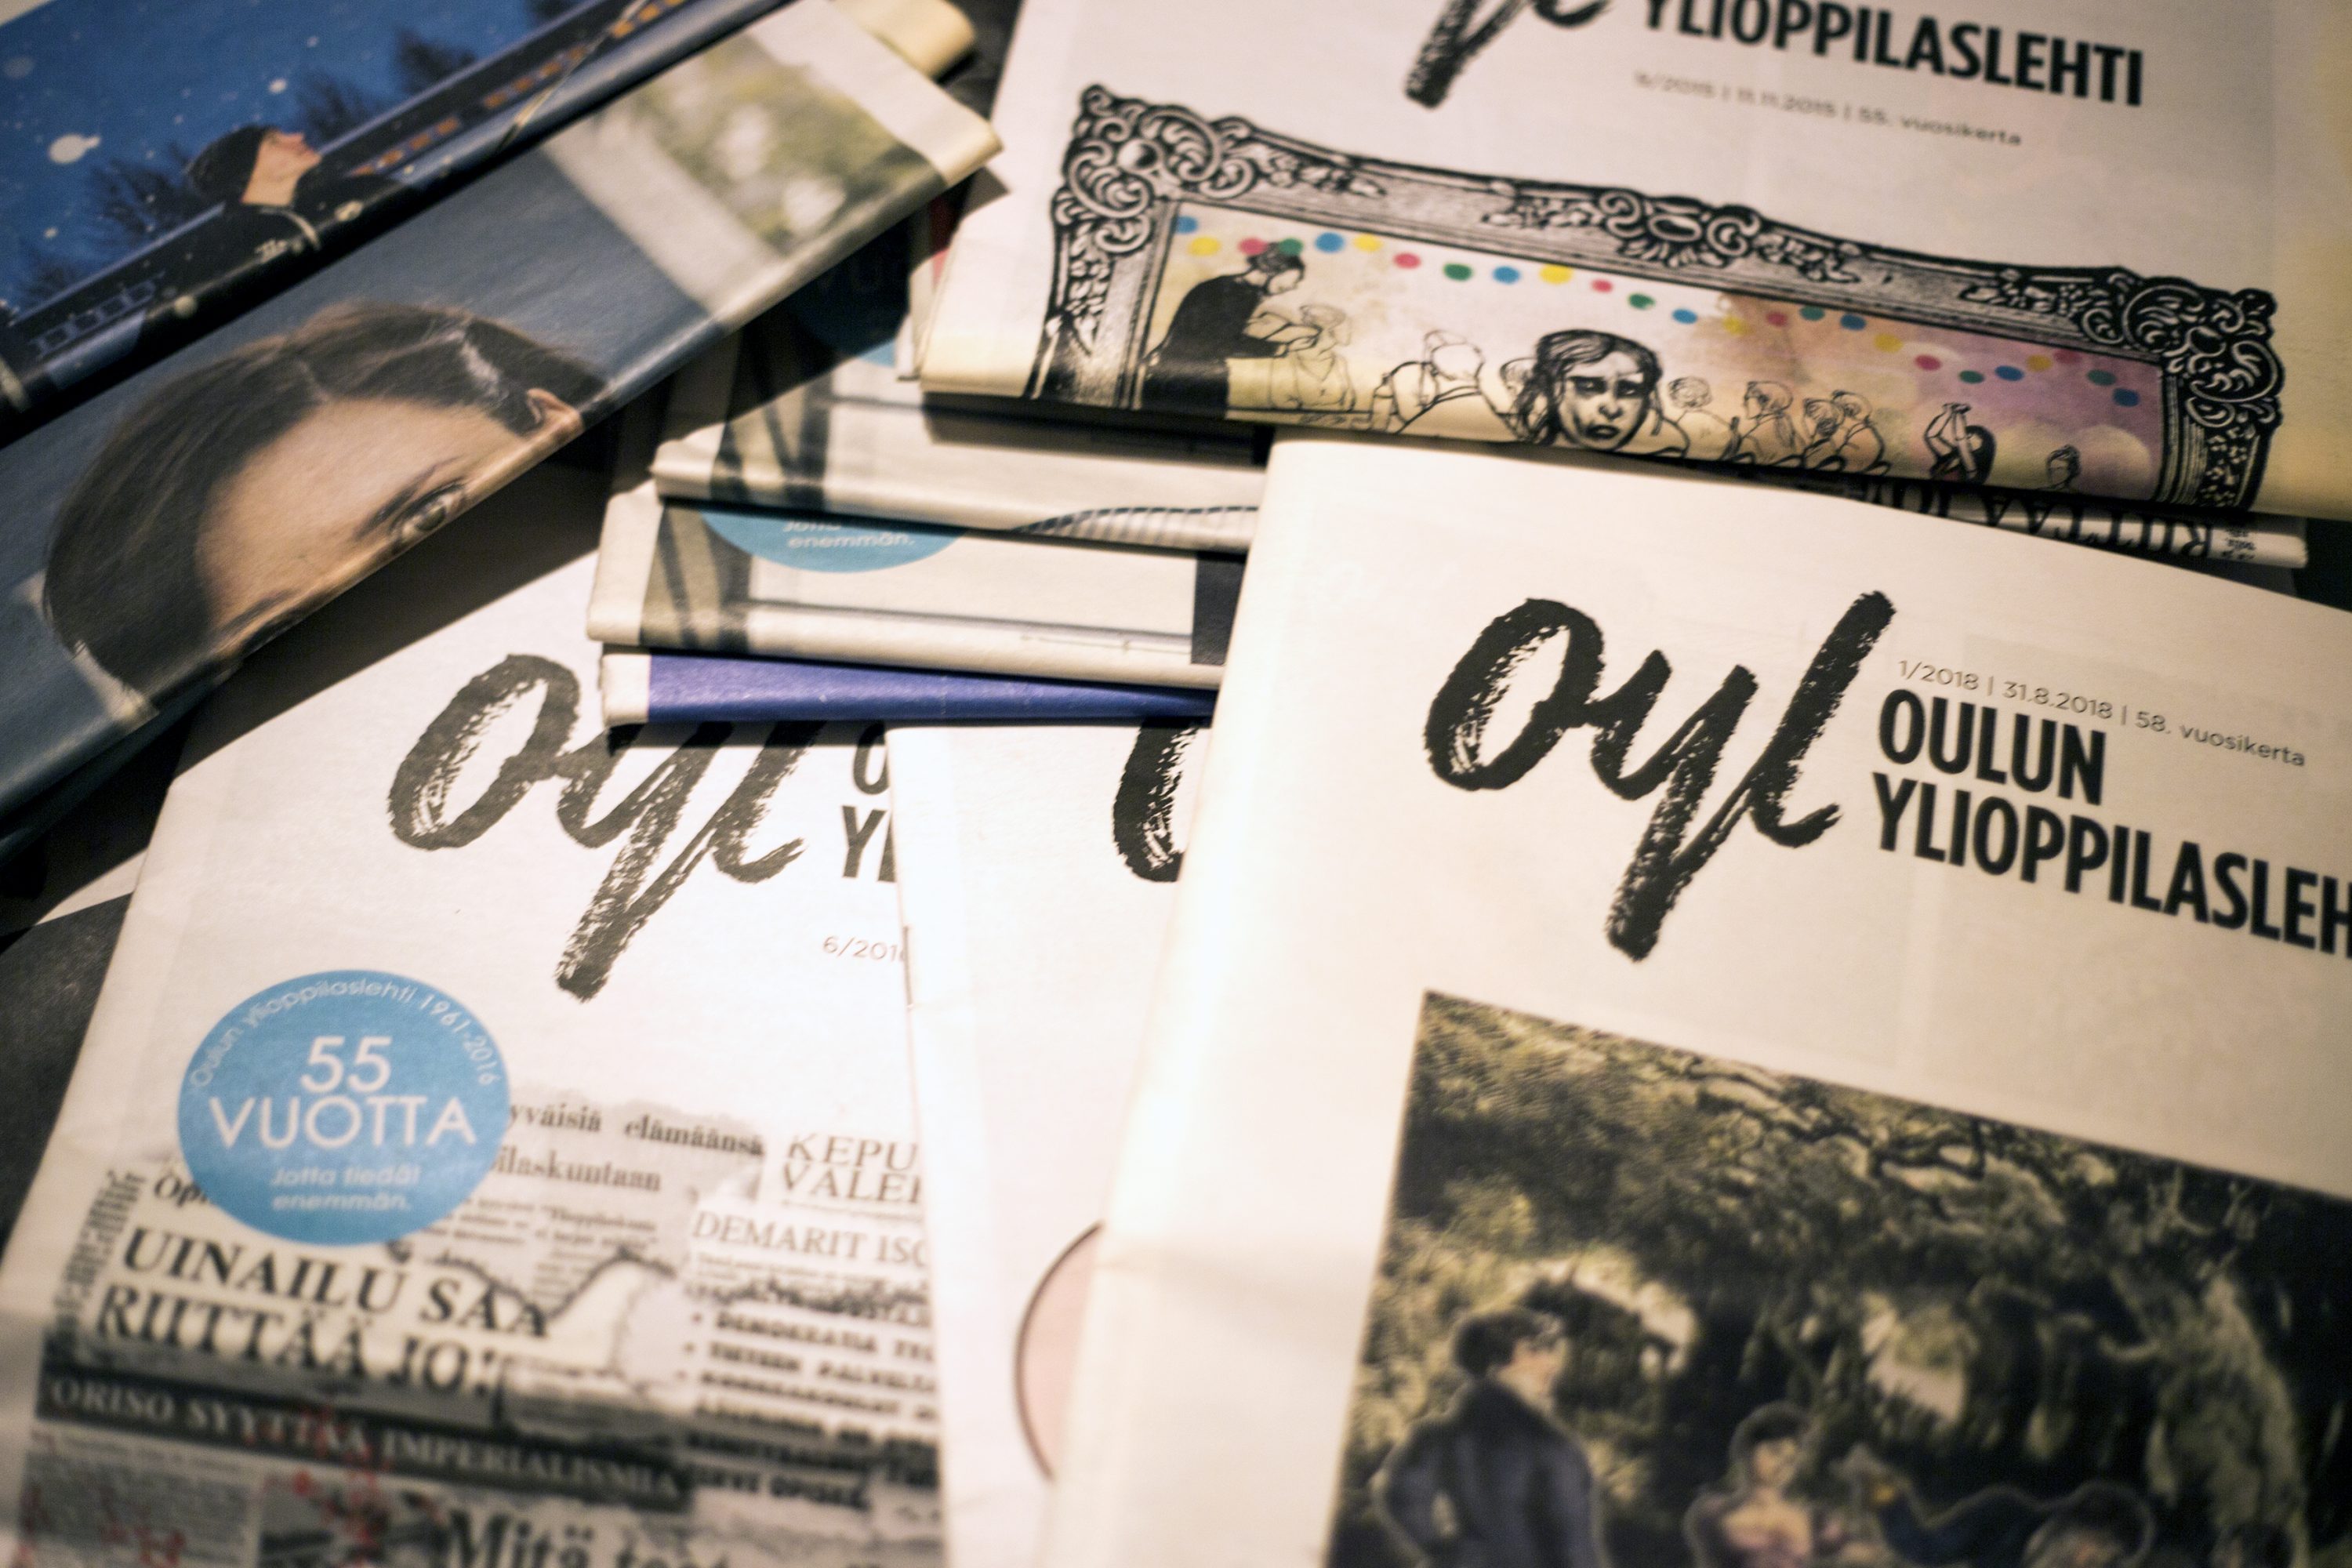 Oulun ylioppilaslehti ilmestyi säännöllisenä printtilehtenä vuoden 2016 loppuun asti. Lehden ensimmäinen numero ilmestyi vuonna 1961.